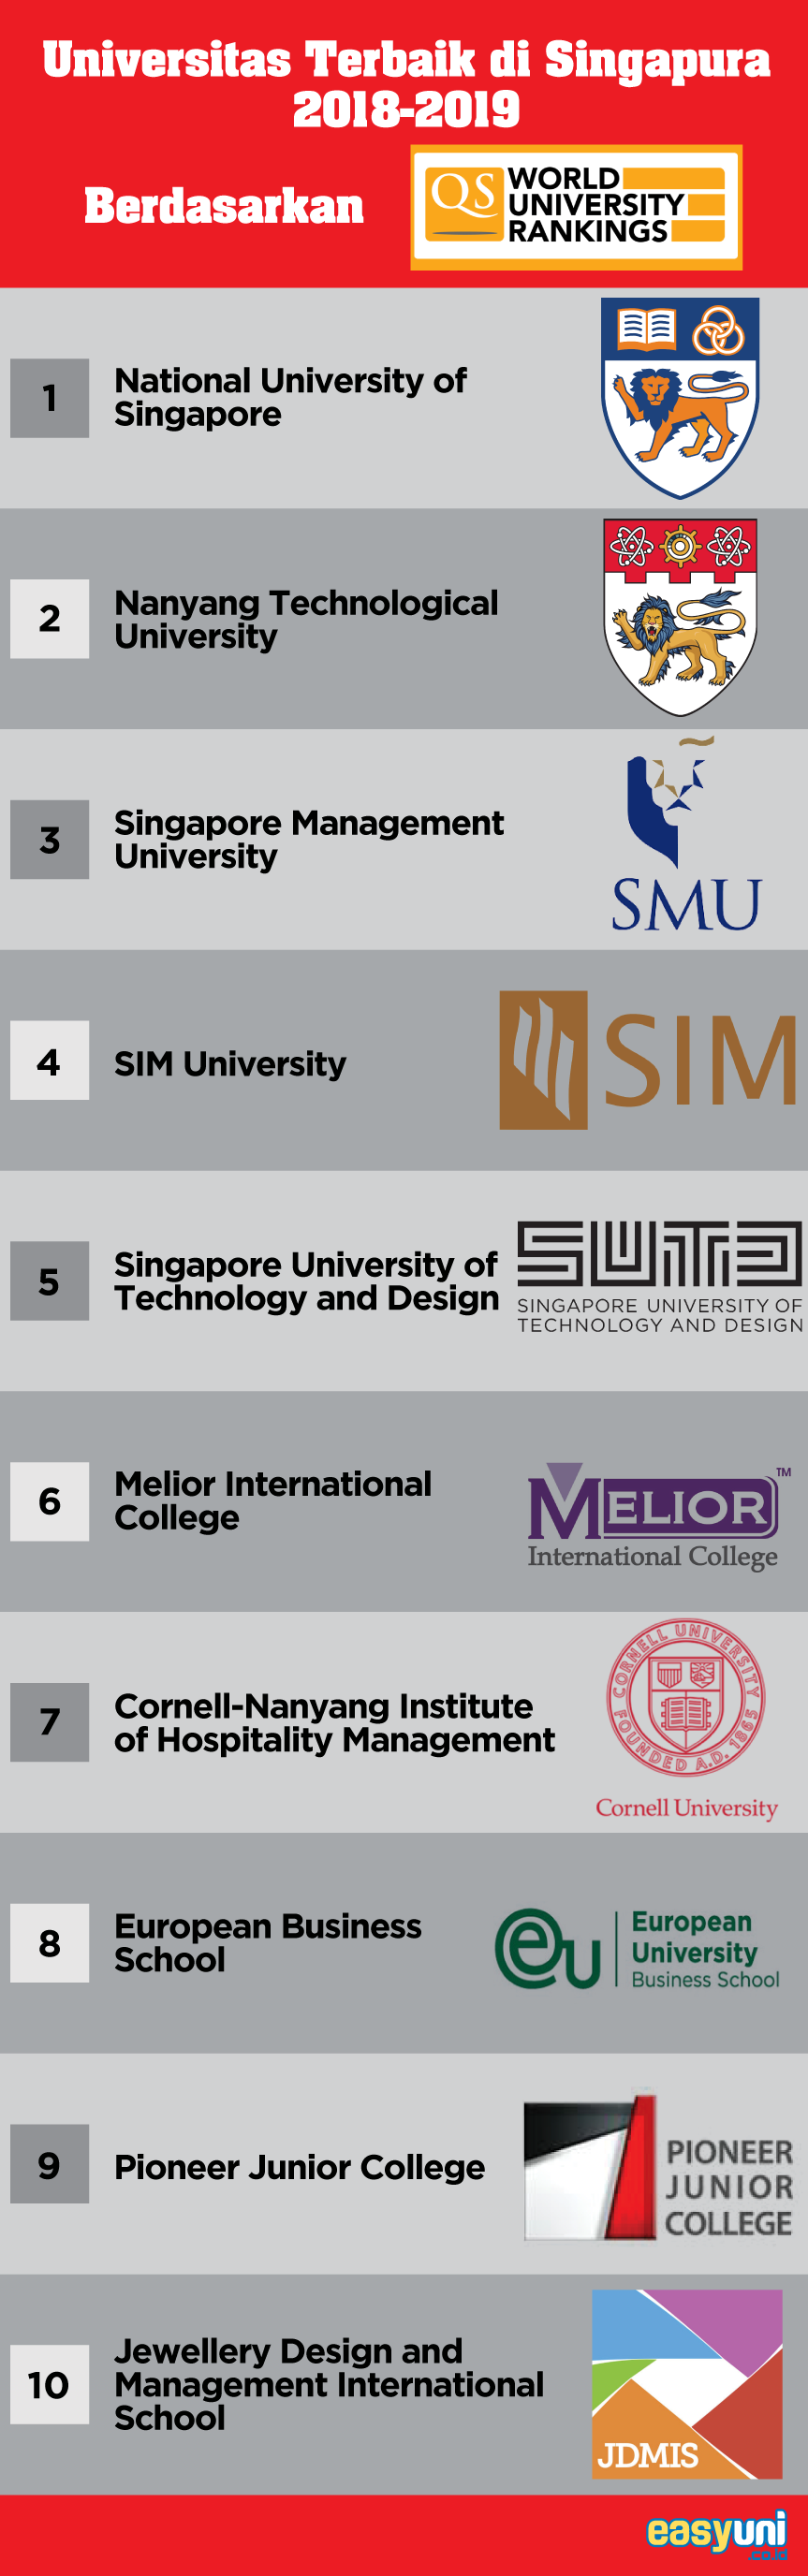 Panduan Kuliah Di Singapura | Universitas, Biaya Kuliah 2019